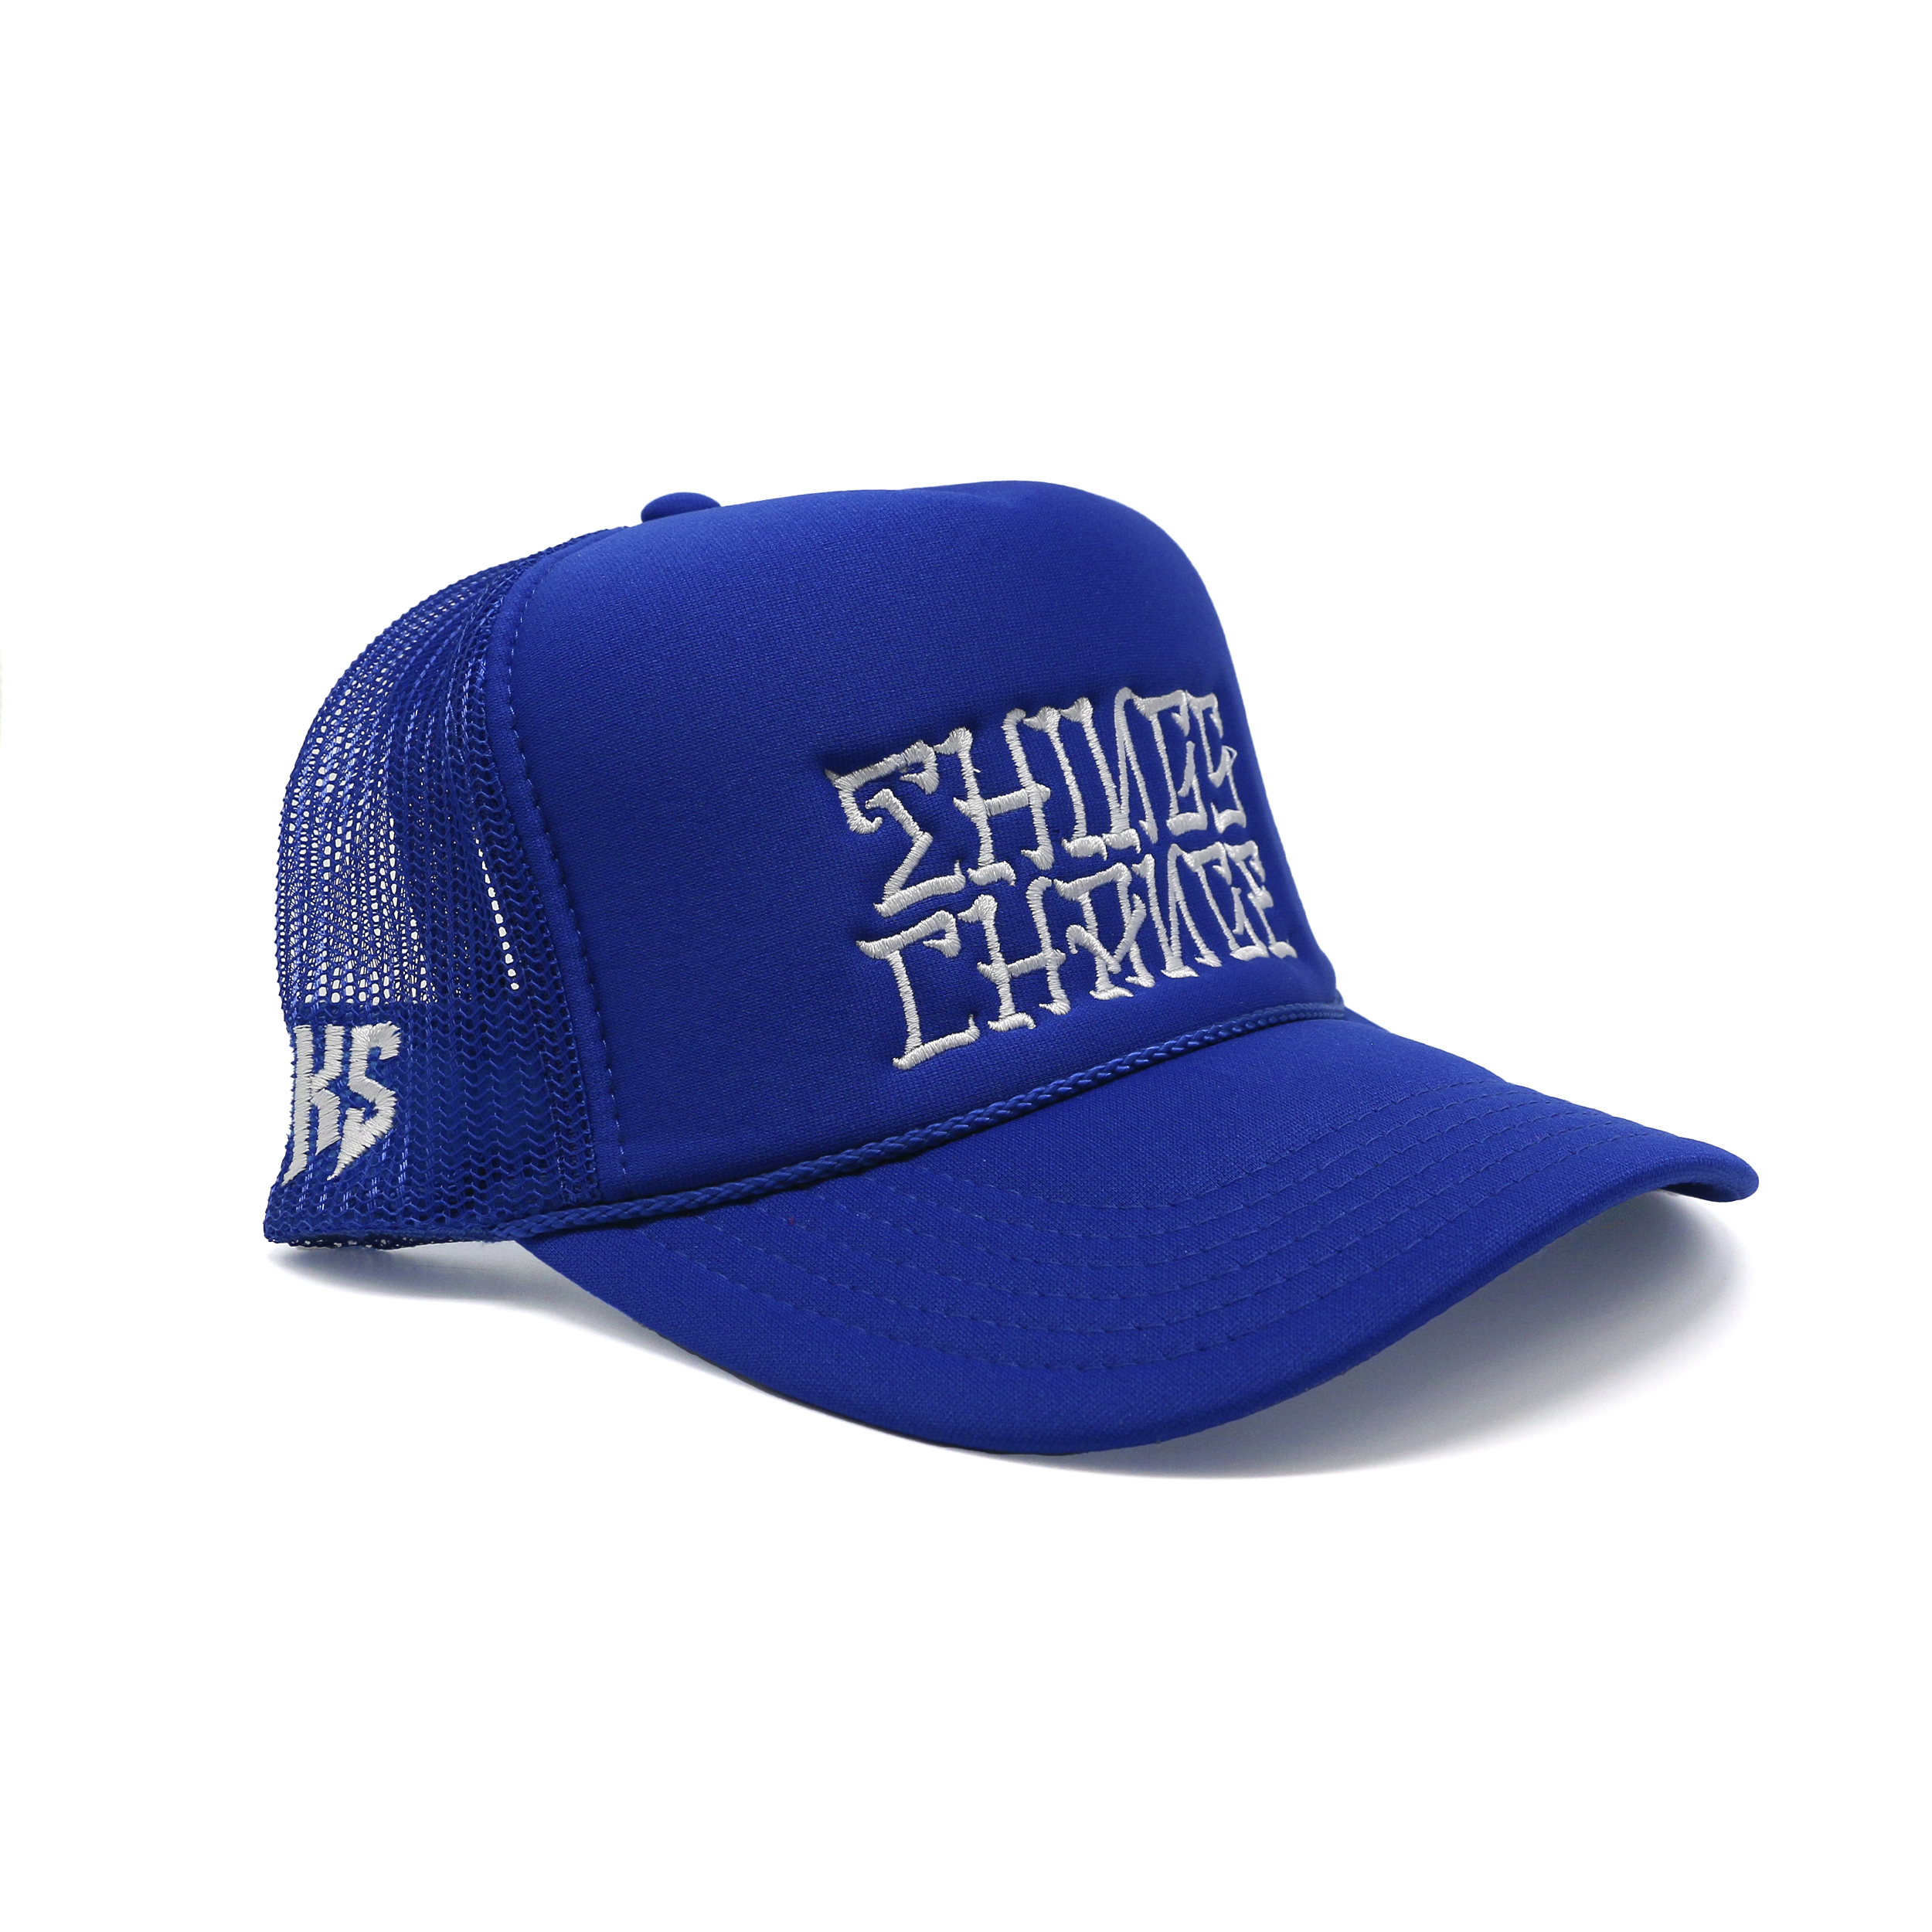 DKS "Things Change" Trucker Hat (Blue/White)